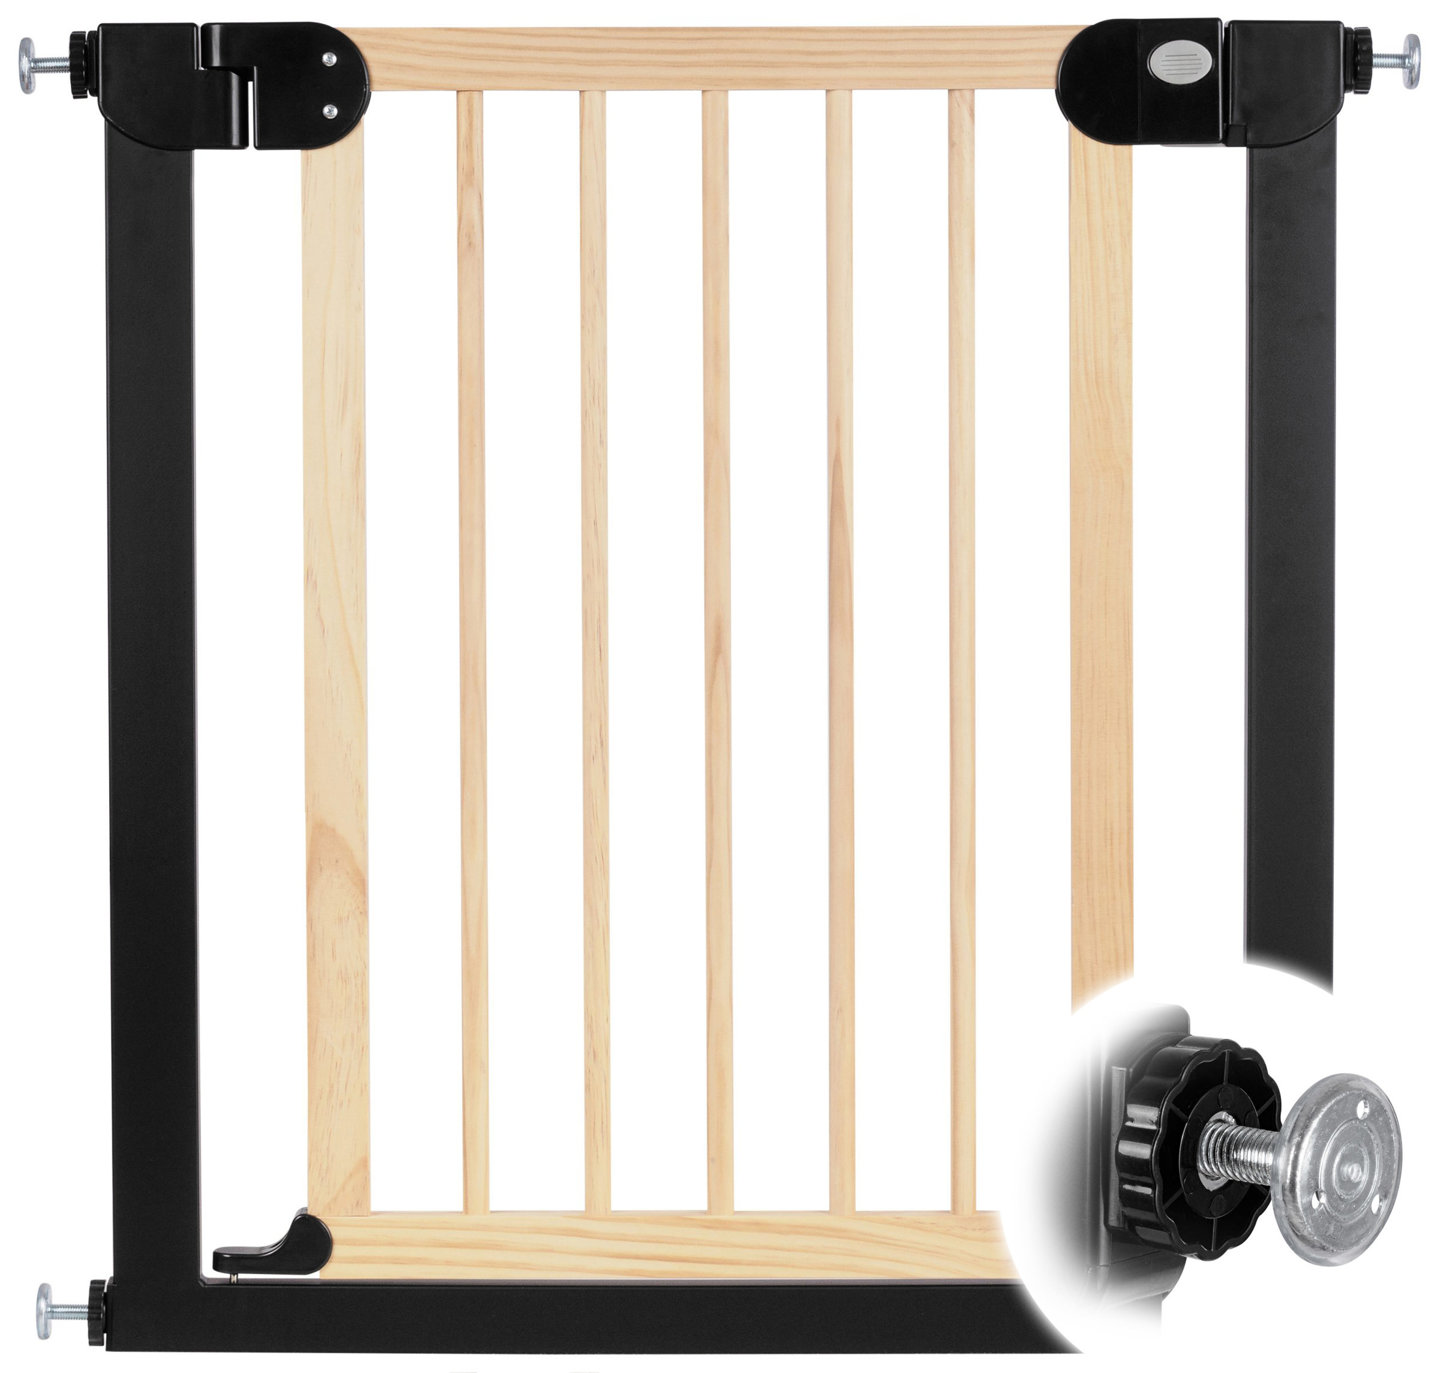 Dřevěná zábrana pro dveře a schody – ochranná bariéra – šířka 76...83cm